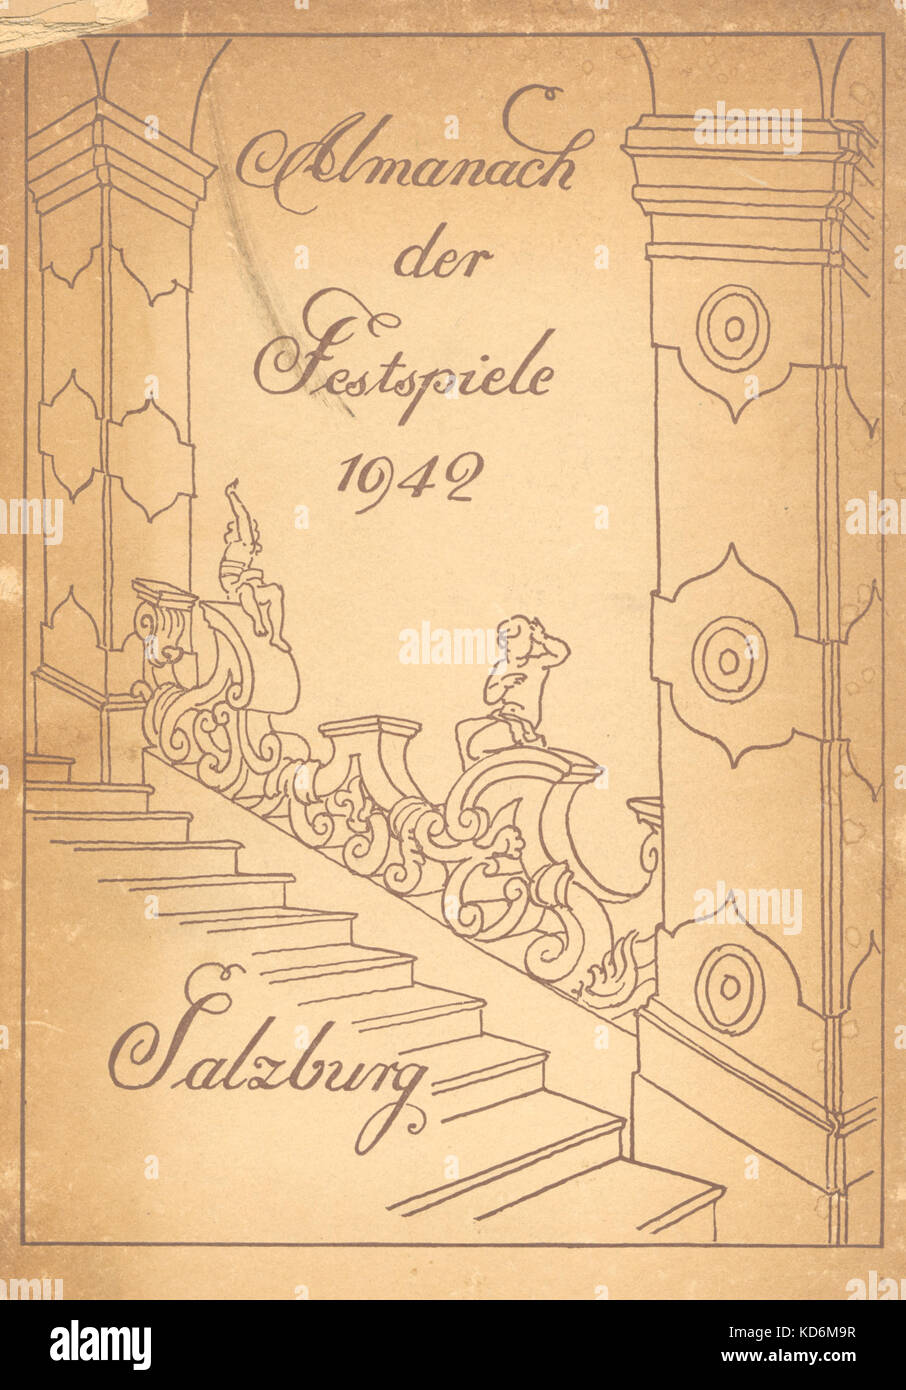 Jährliche Gedenkbuch für die Salzburger Festspiele, Österreich, 1942. "Almanach der Festspiele". Stockfoto